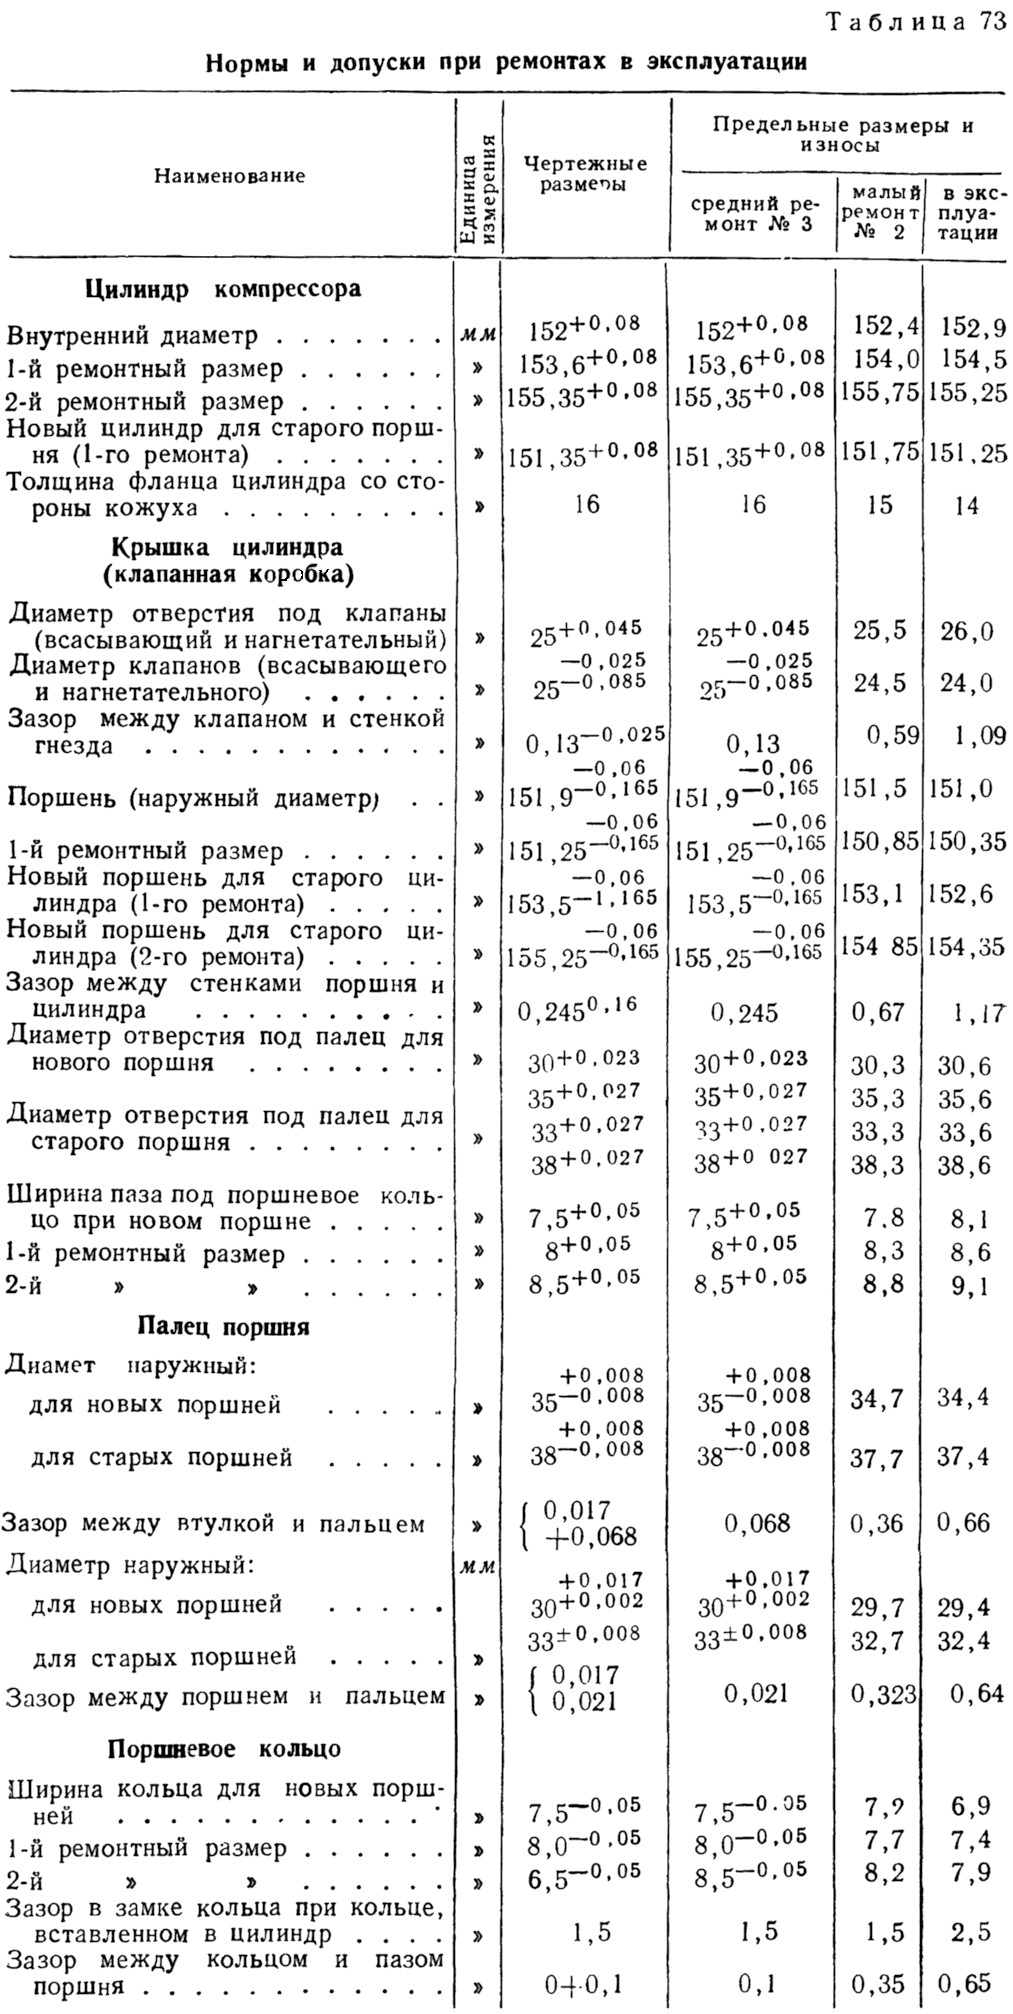 Таблица 73 - Нормы и допуски при ремонтах и эксплуатации для осевых компрессоров Ленинградского типа